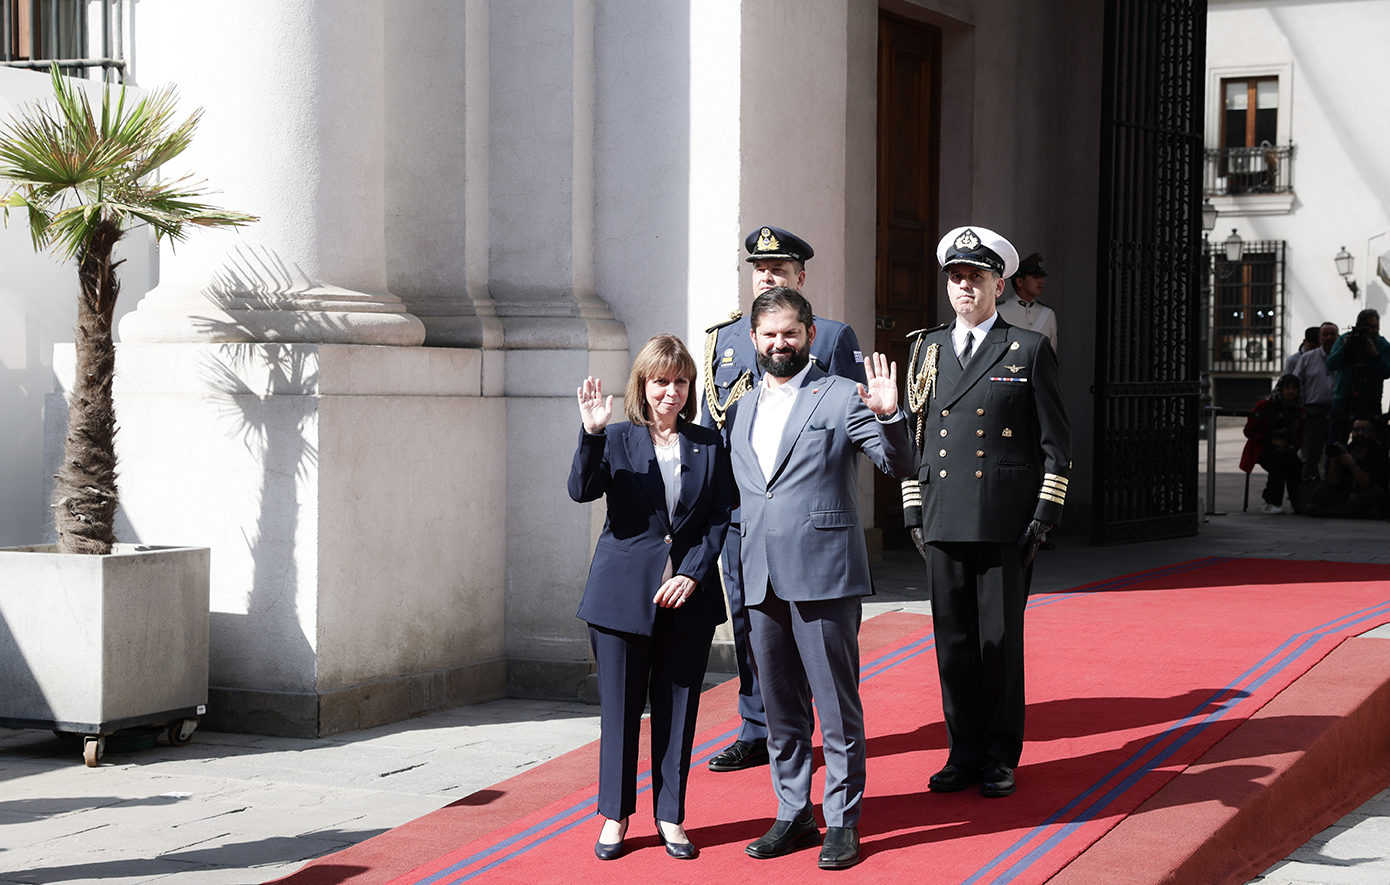 Στη Χιλή η Κατερίνα Σακελλαροπούλου μετά από πρόσκληση του Γκάμπριελ Μπόριτς